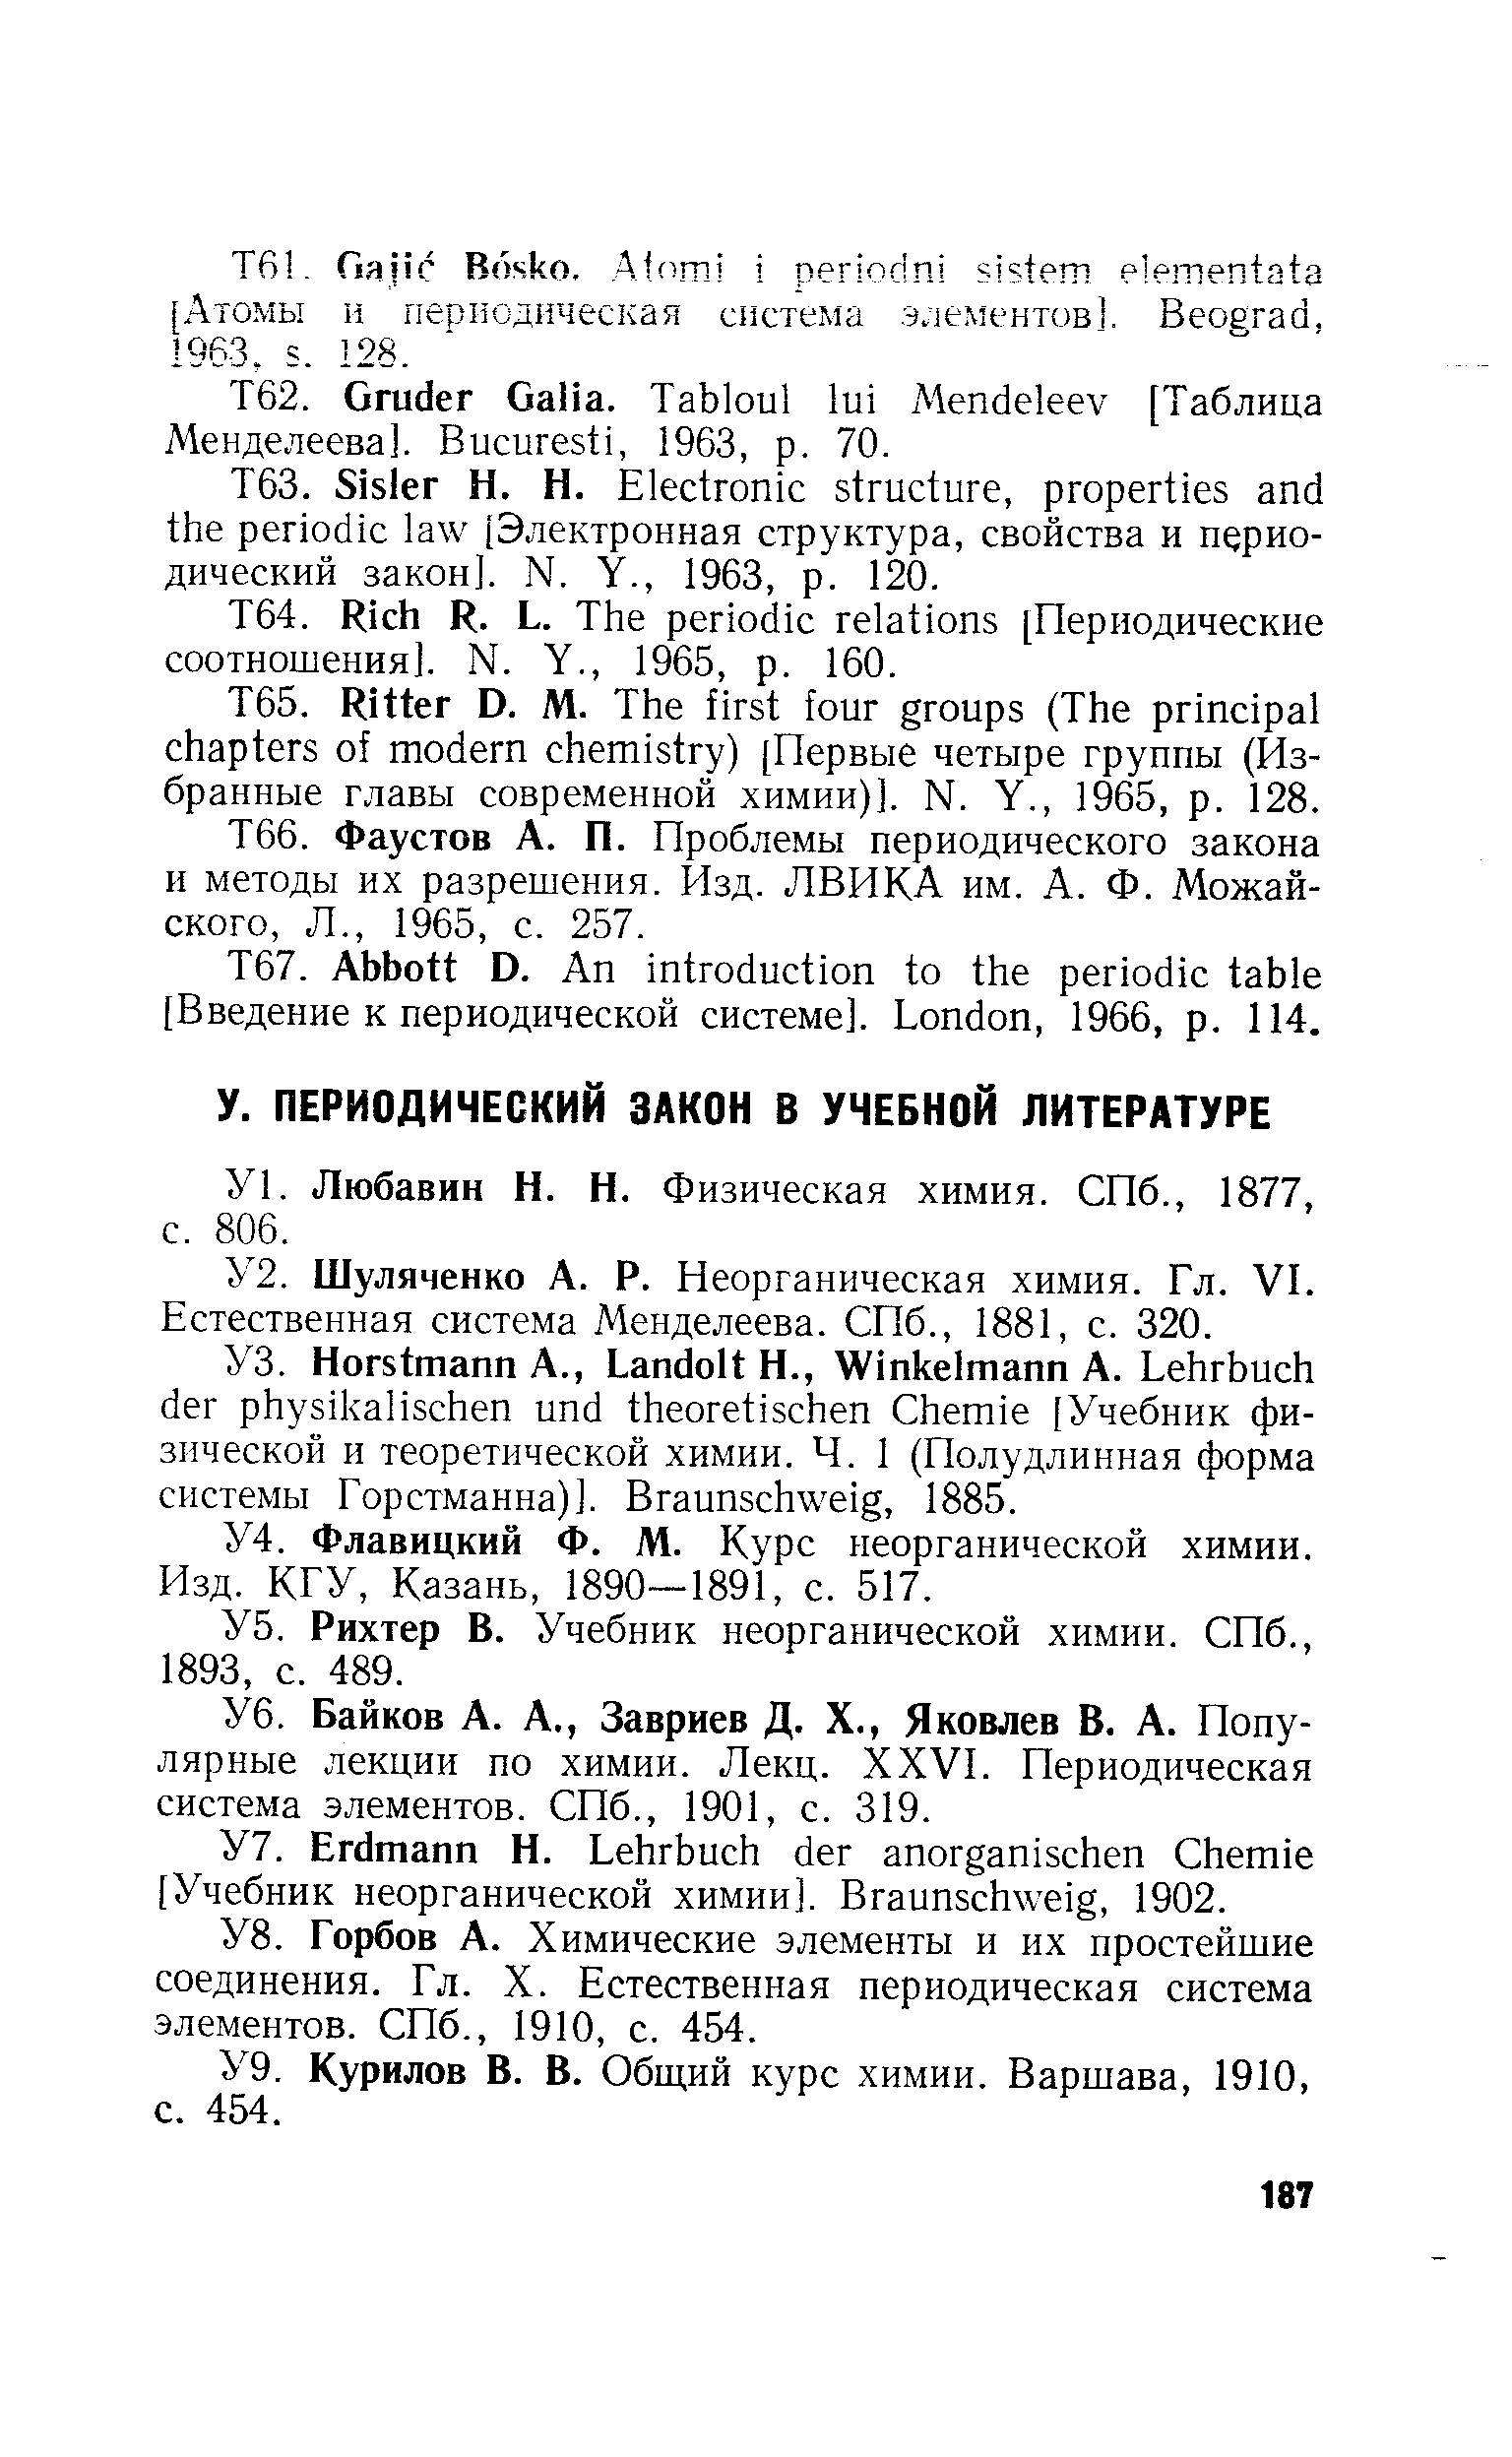 Шуляченко А. Р. Неорганическая химия. Гл. VL Естественная система Менделеева. СПб., 1881, с. 320.